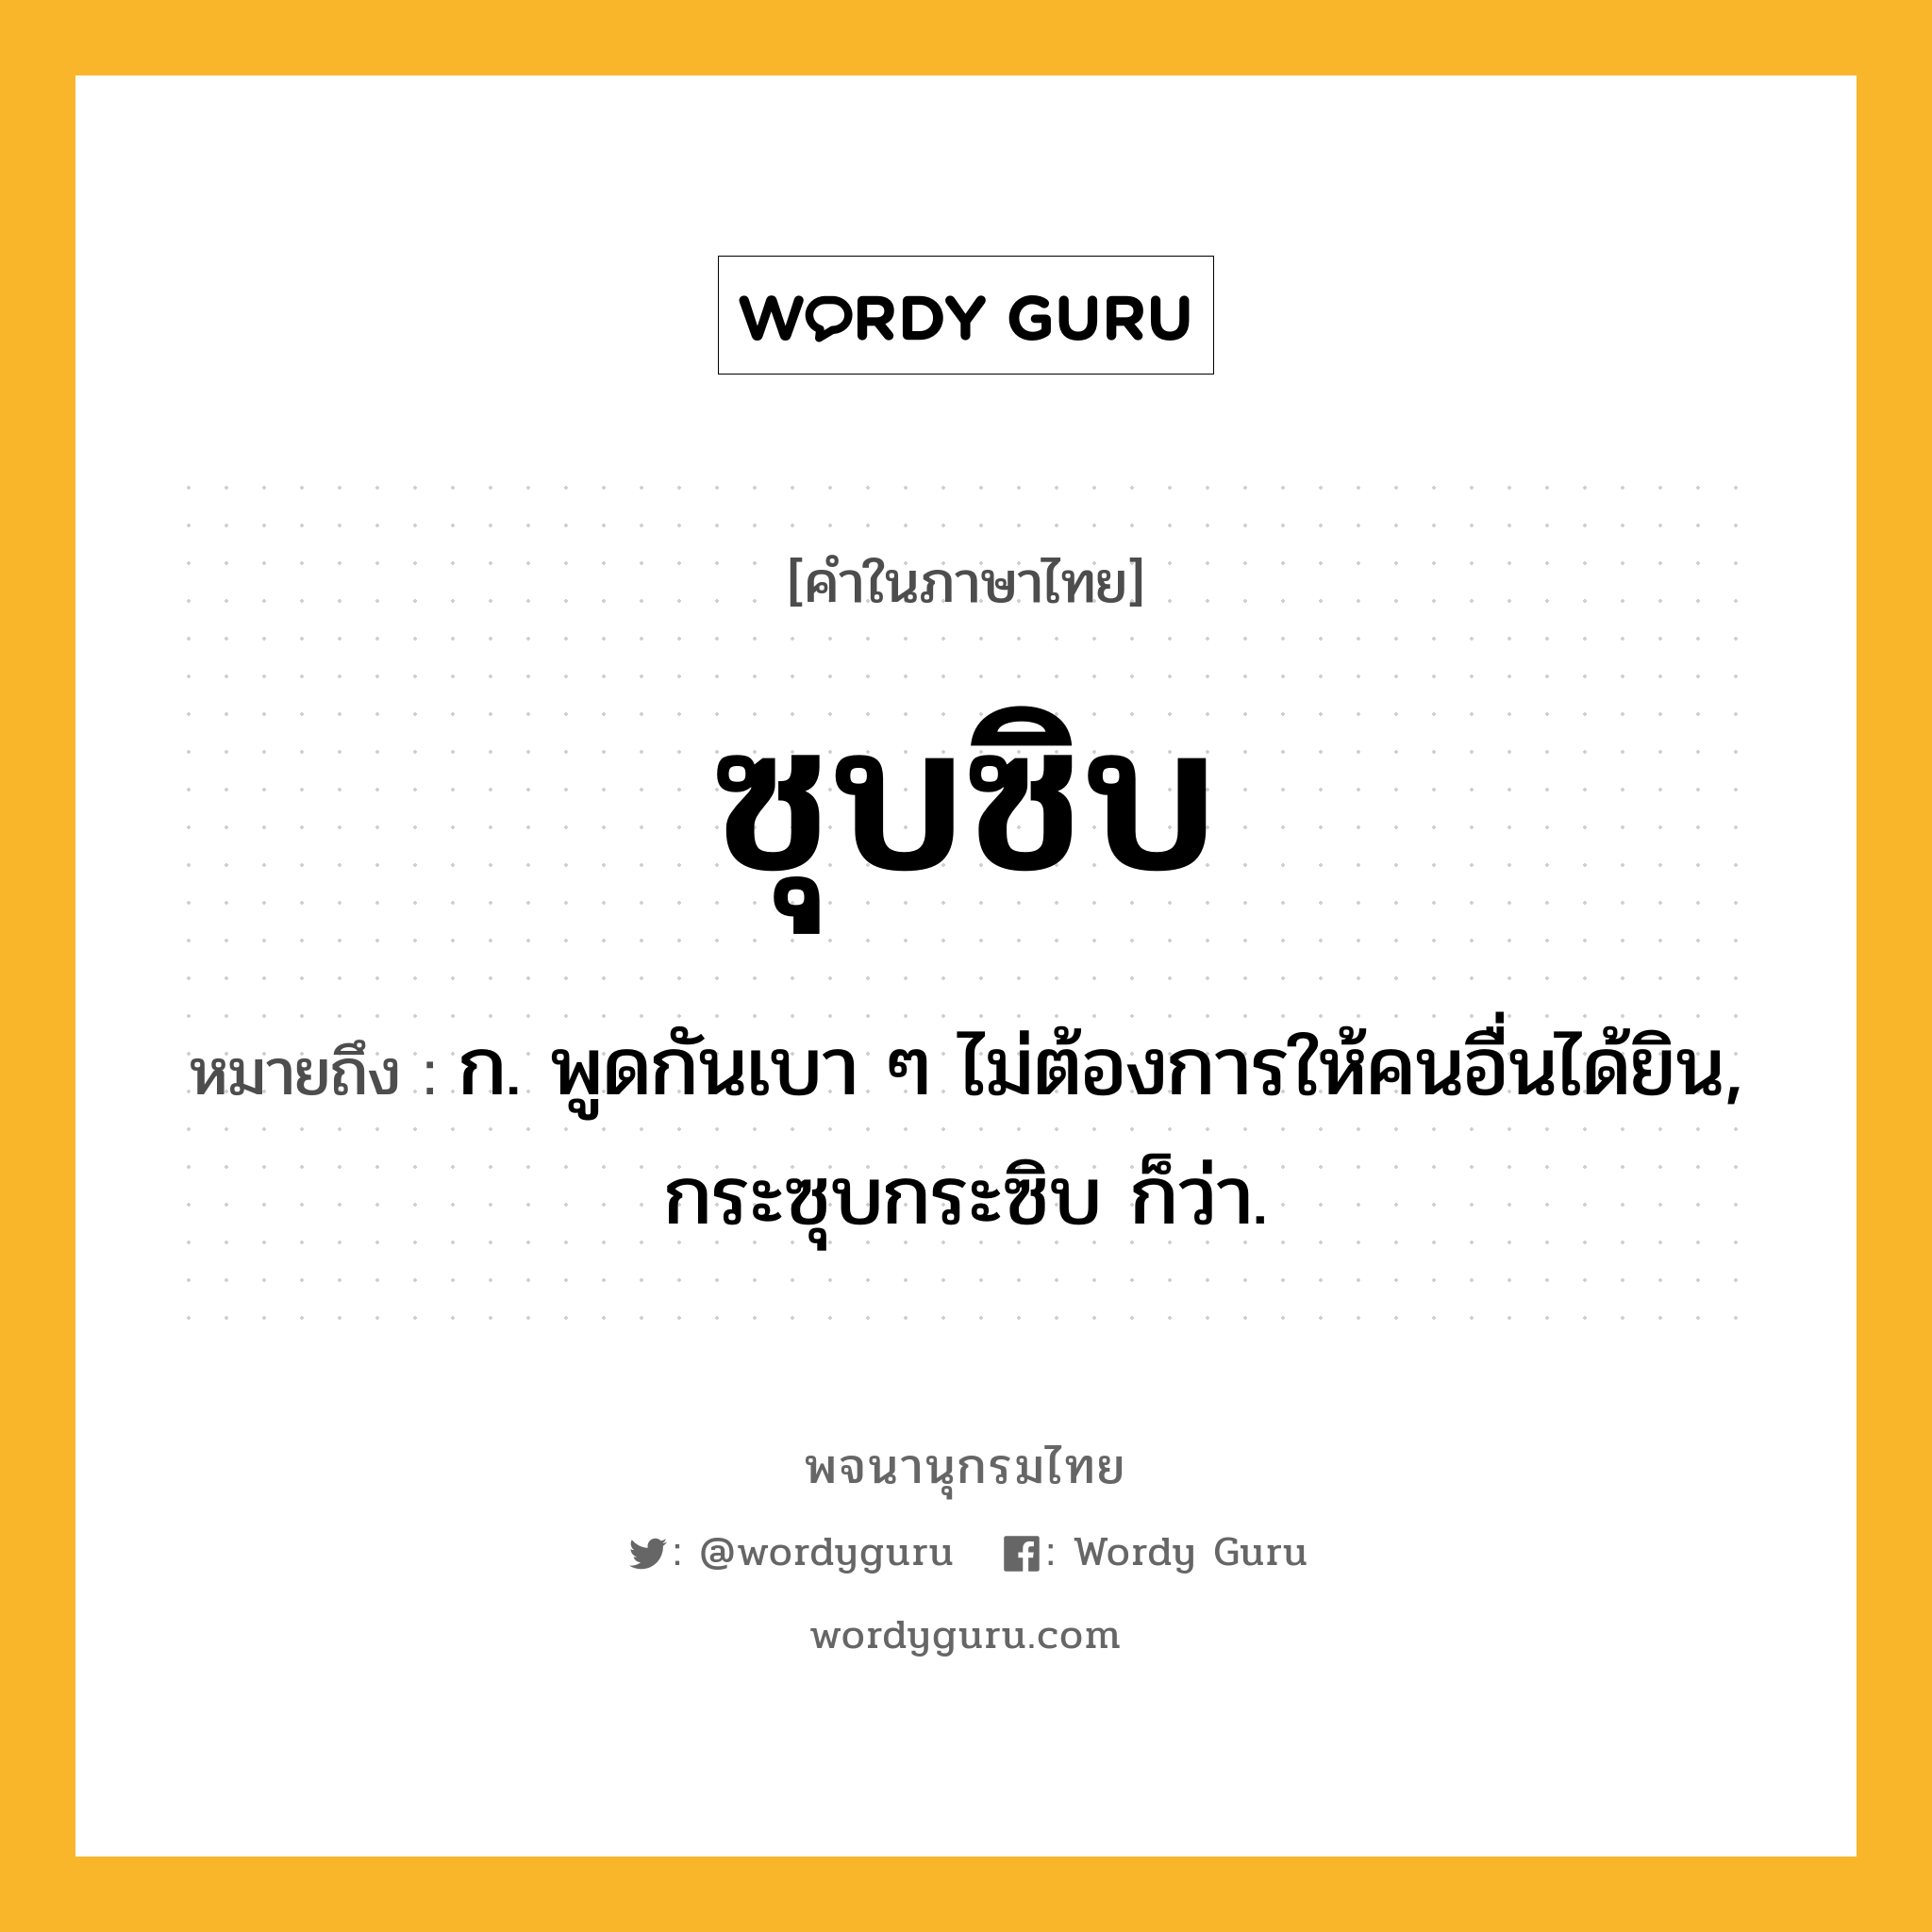 ซุบซิบ หมายถึงอะไร?, คำในภาษาไทย ซุบซิบ หมายถึง ก. พูดกันเบา ๆ ไม่ต้องการให้คนอื่นได้ยิน, กระซุบกระซิบ ก็ว่า.